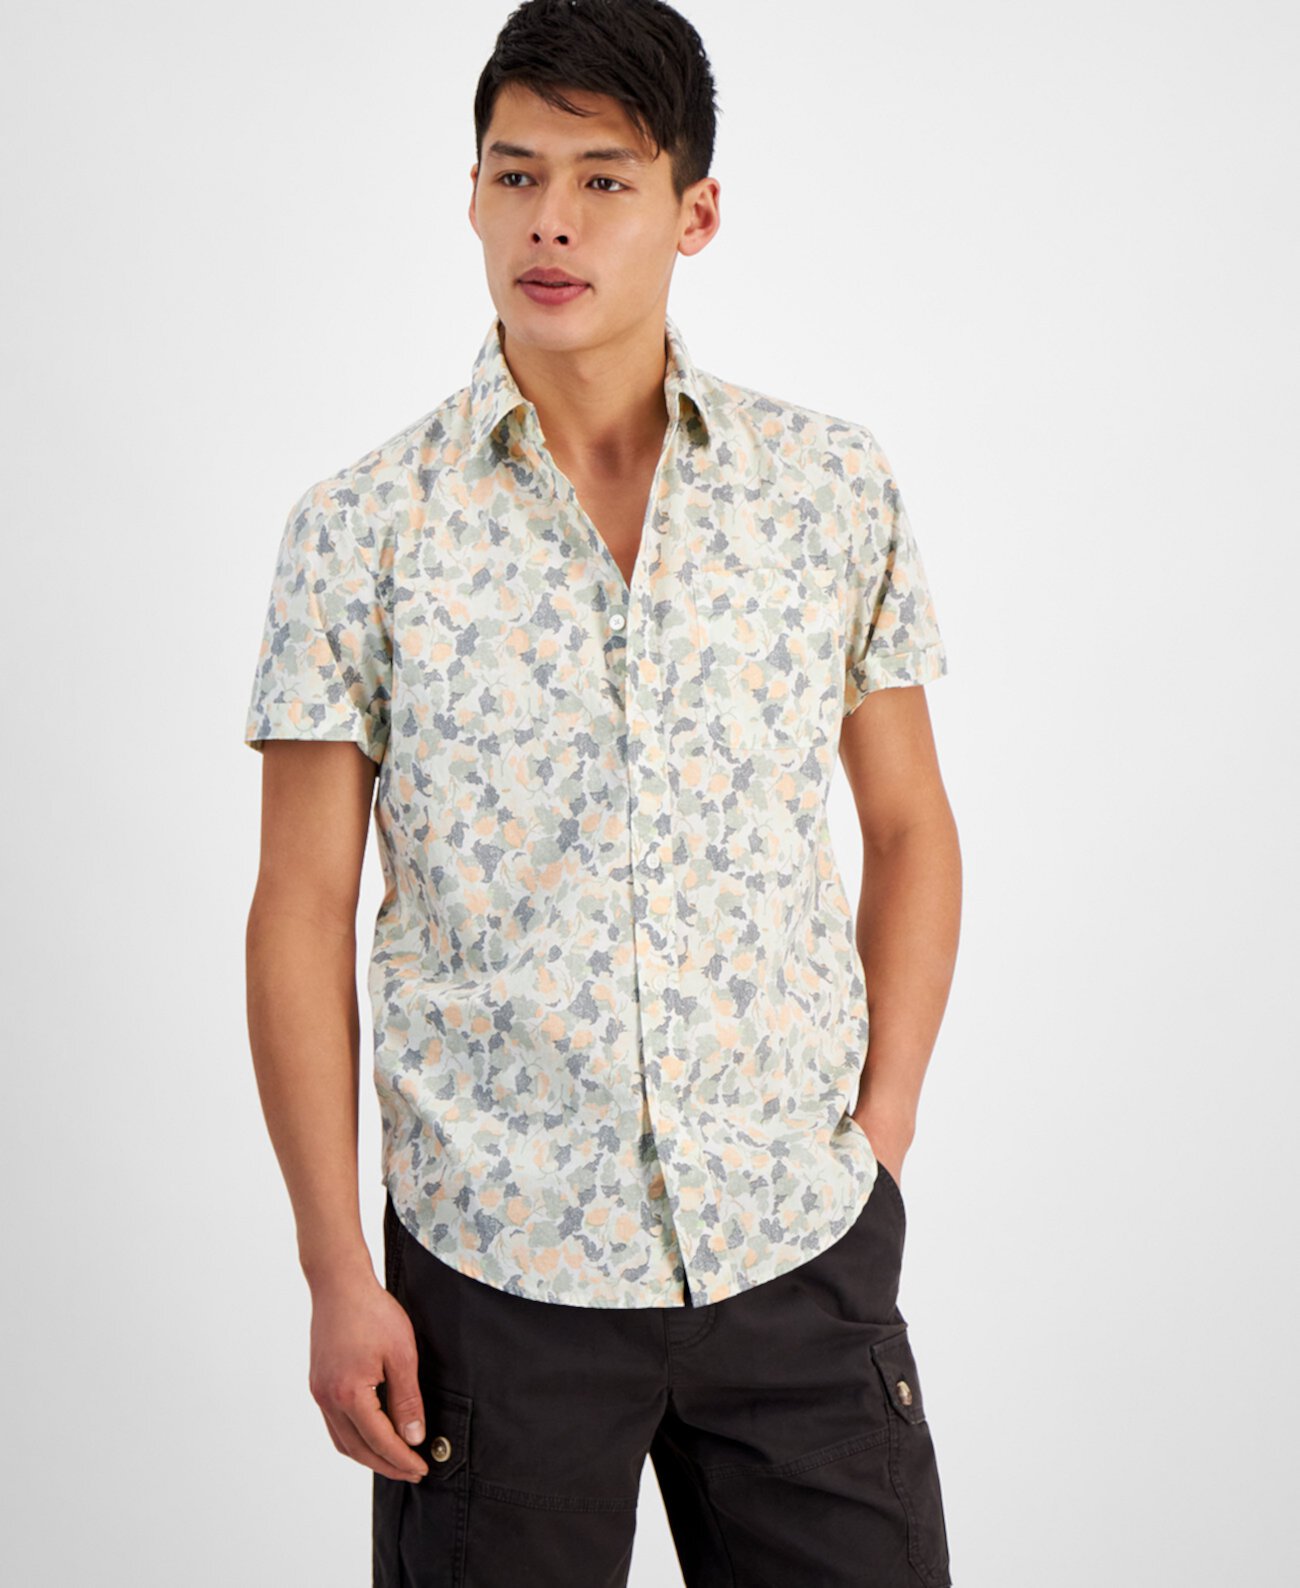 Мужская рубашка Lucas с короткими рукавами и принтом листьев на пуговицах спереди, созданная для Macy's Sun & Stone